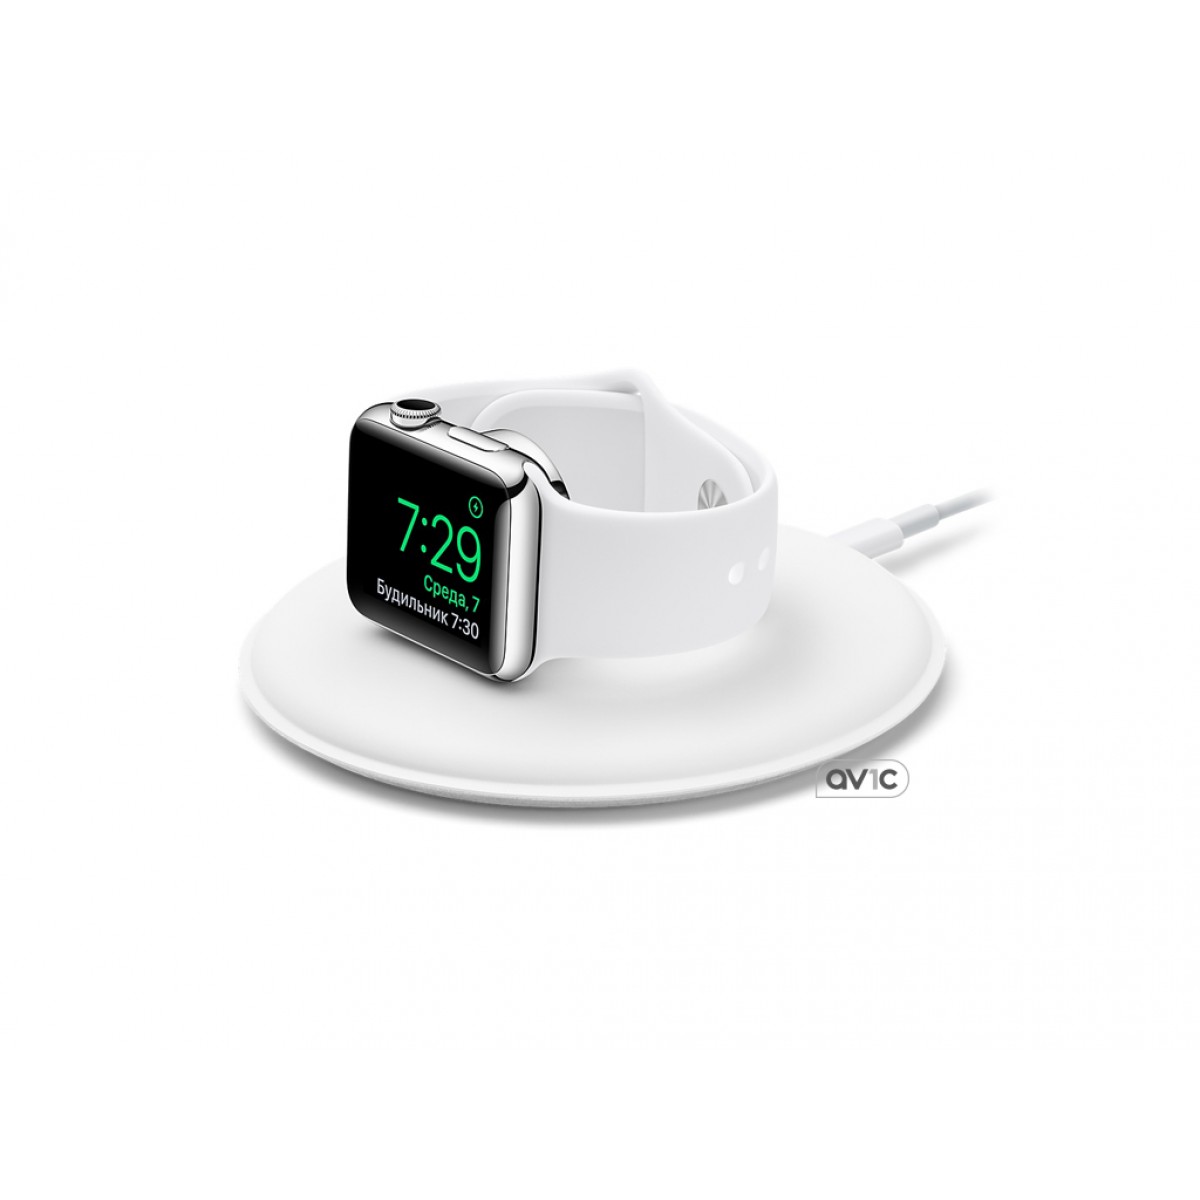 Беспроводная зарядка для apple watch. Док станция для АПЛ вотч. Зарядка для Эппл вотч 6. Apple watch Charging Dock. Беспроводная зарядка для Эппл вотч.